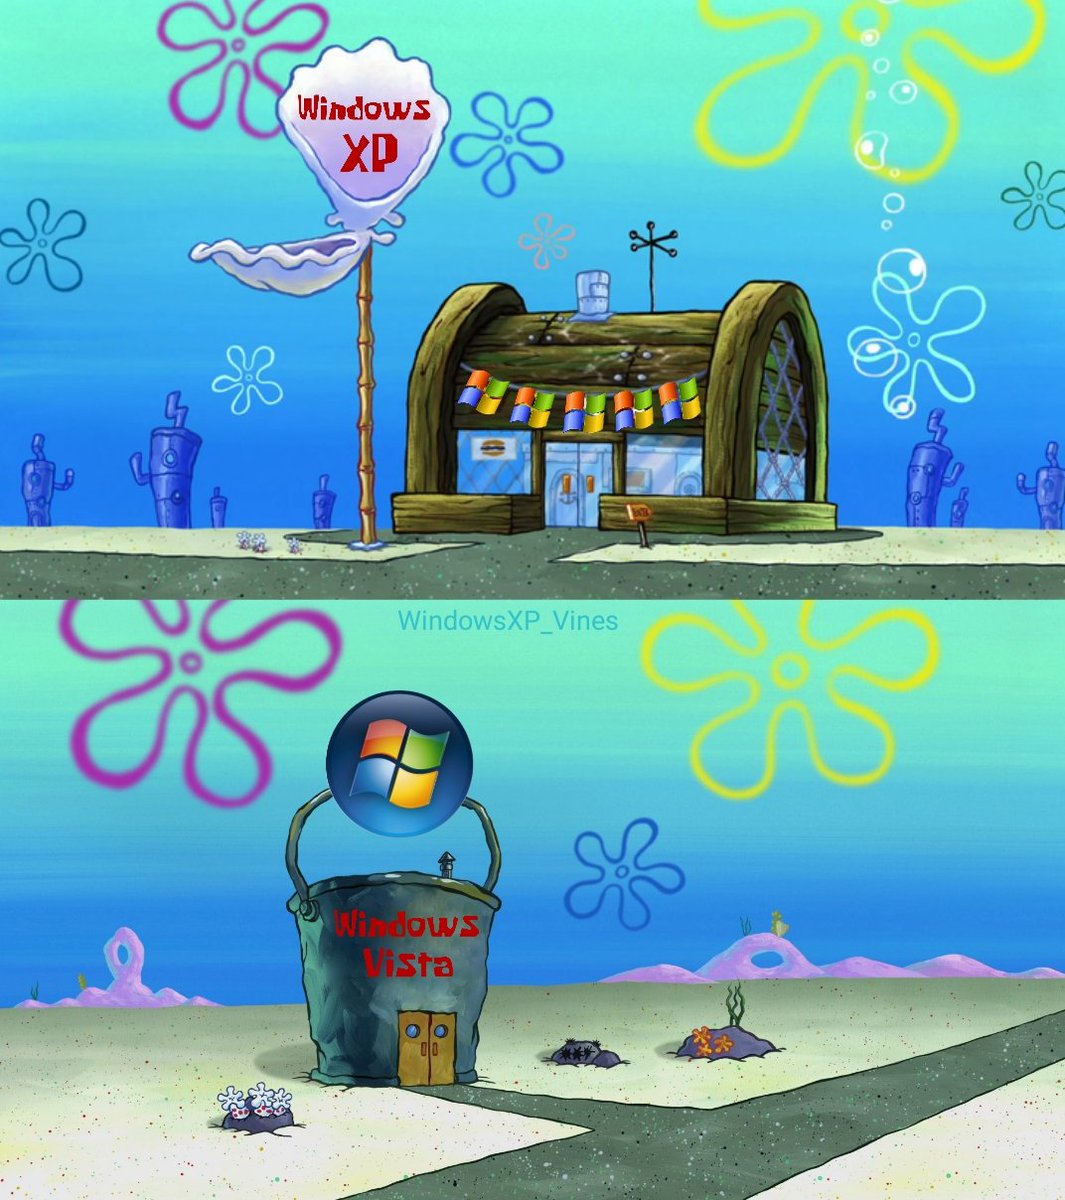 Windows XP Vines On Twitter Windowsxp Windows Meme Spongebob via twitter.co...